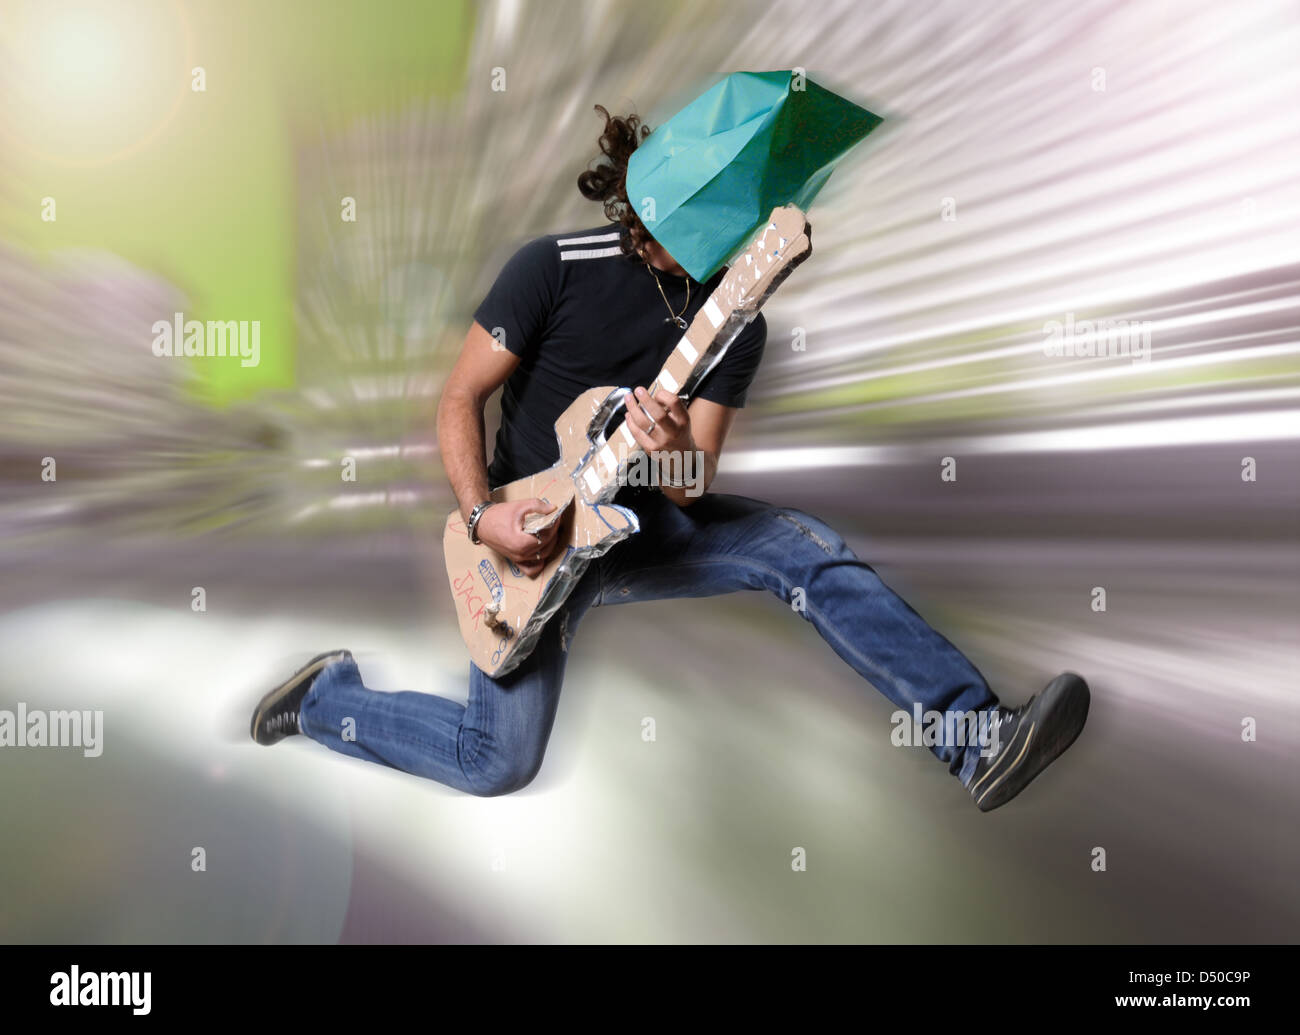 Man with carton fake guitar Stock Photo